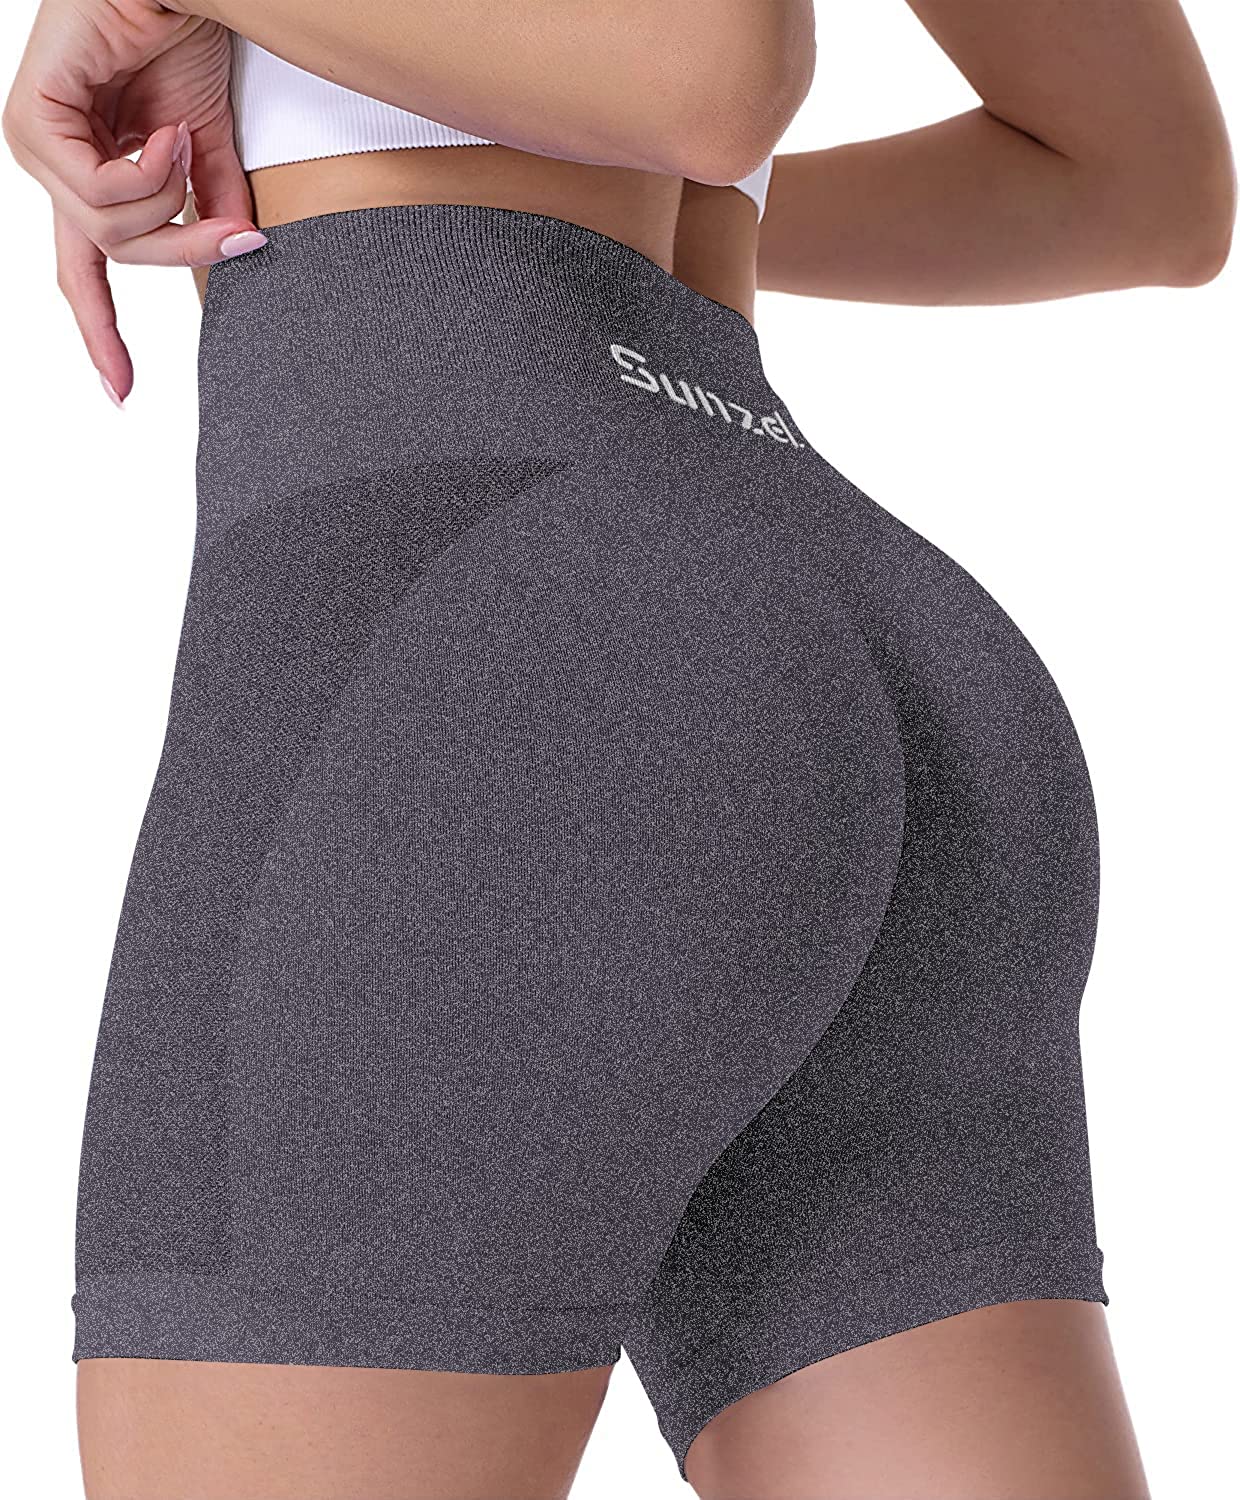  Sunzel 8 / 5 / 3 Biker Shorts For Women